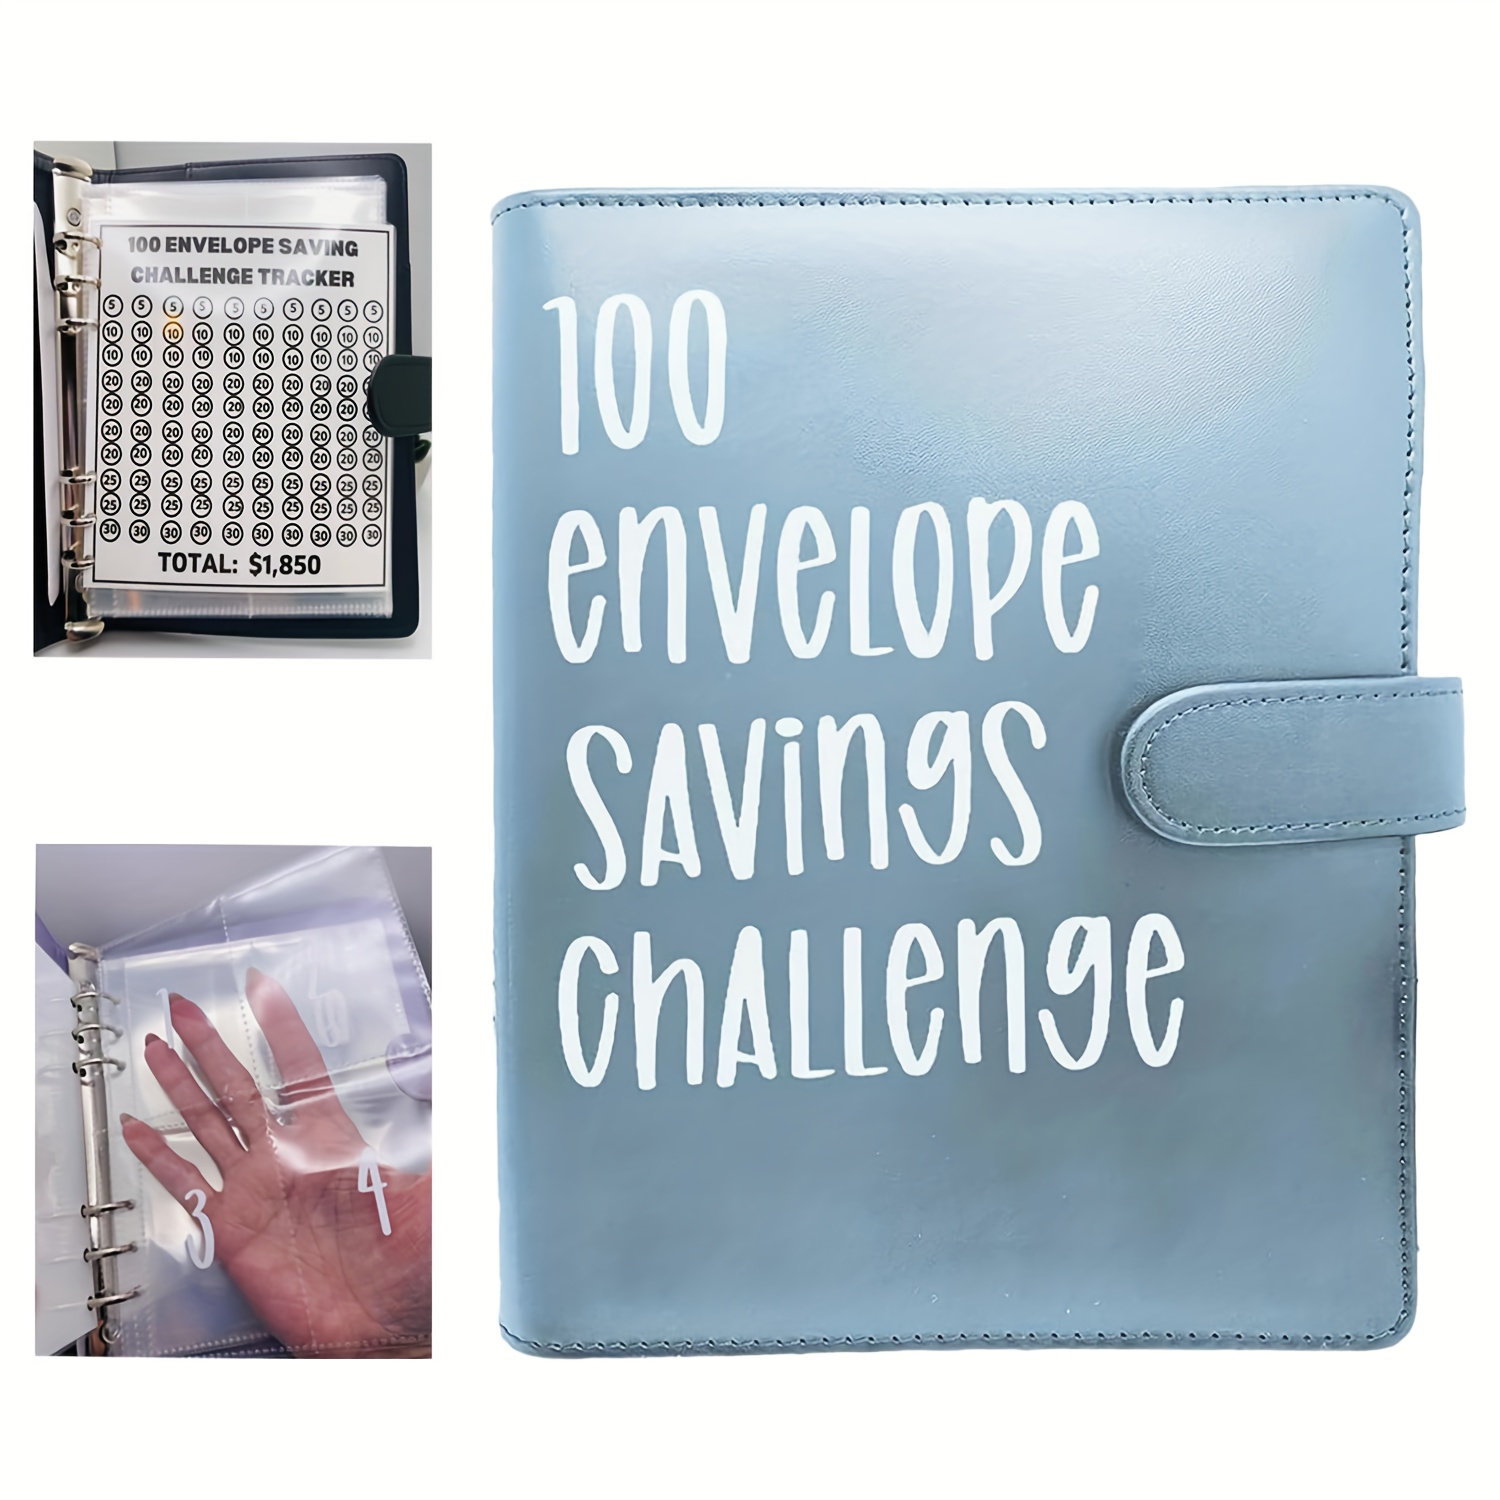  Carpeta de desafío de 100 sobres, libro de desafíos para ahorrar  dinero, forma fácil y divertida de ahorrar $5,050, carpeta de presupuesto  para desafíos de ahorro de dinero, carpeta de presupuesto